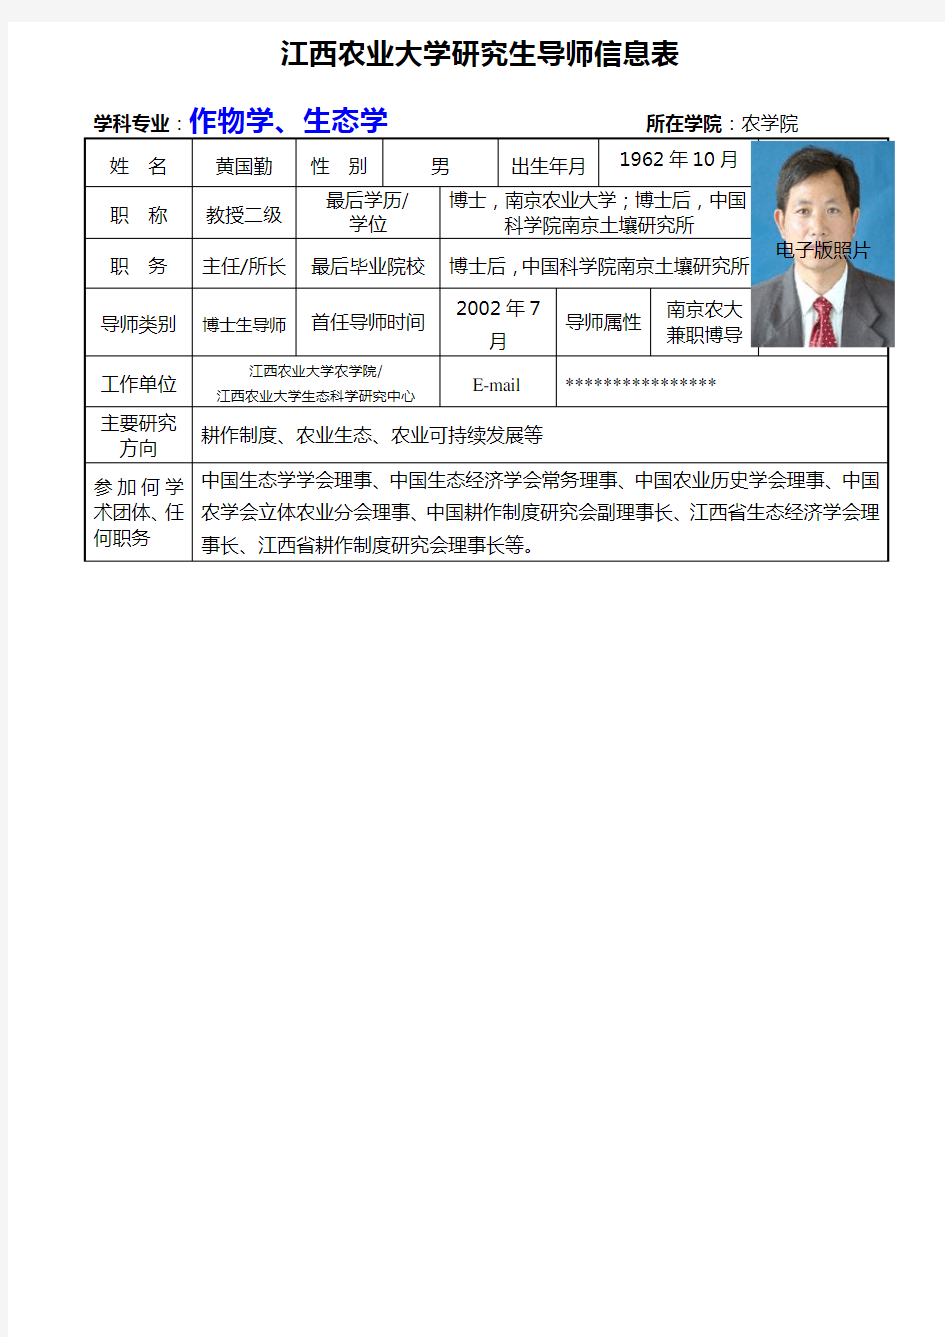 江西农业大学研究生导师信息表-江西农业大学研究生院